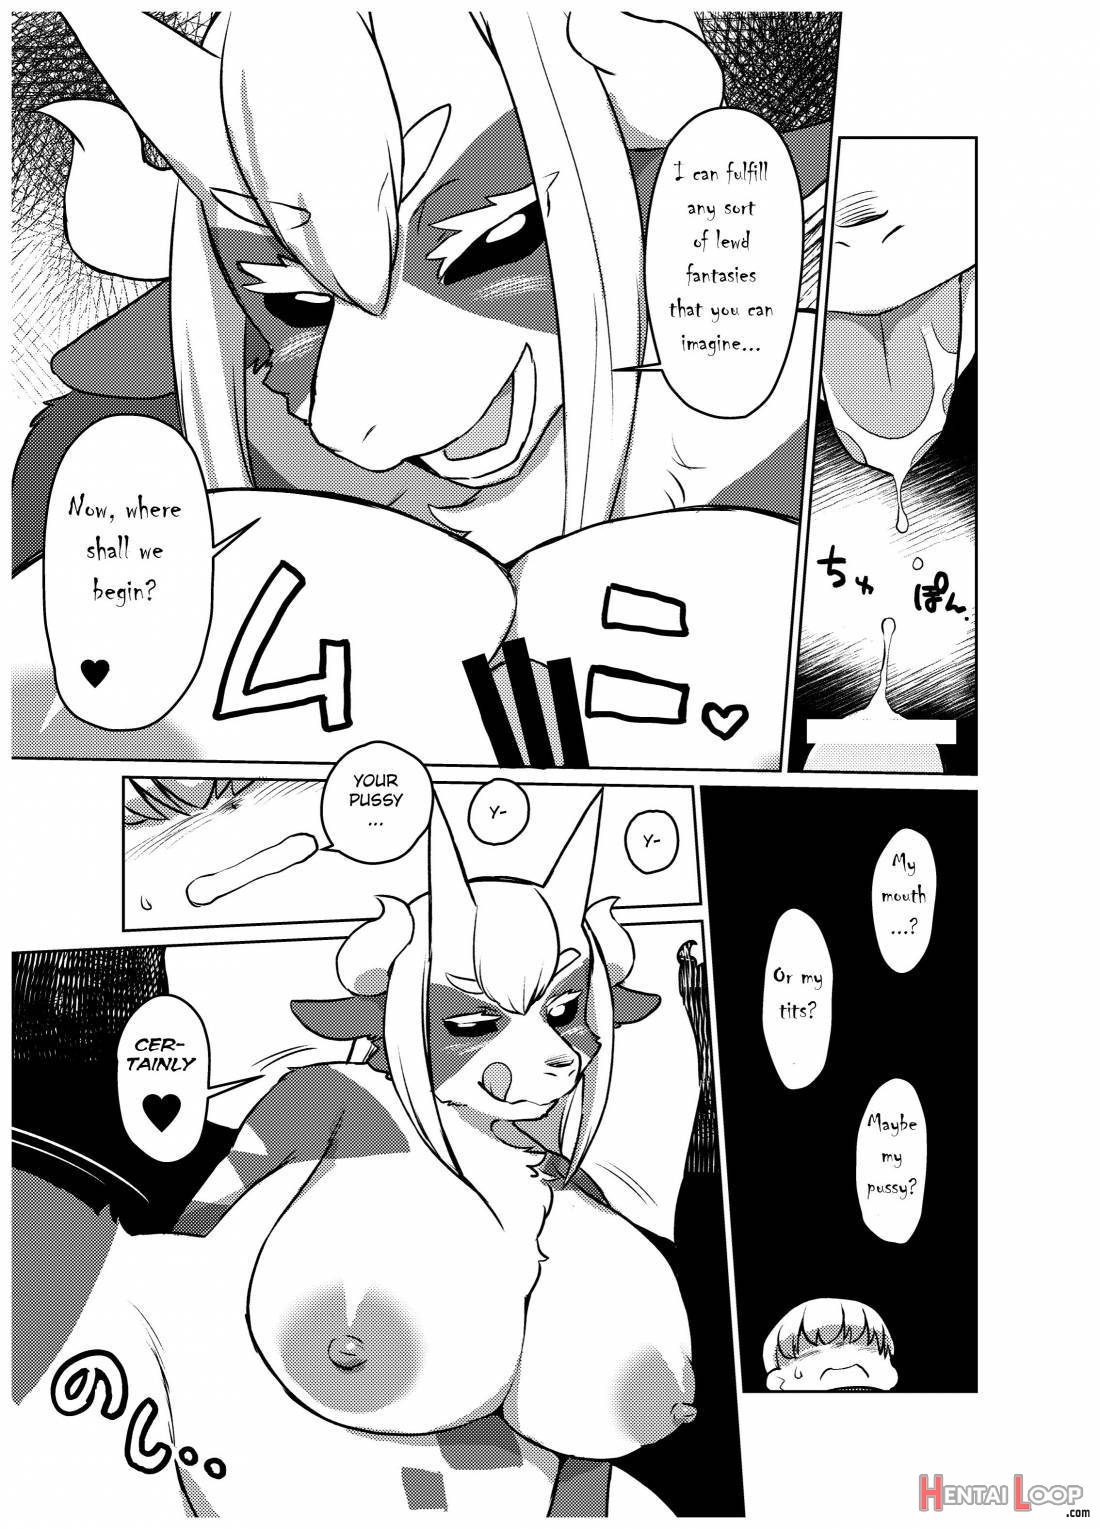 Yojo-han Bunny Part 3 page 44